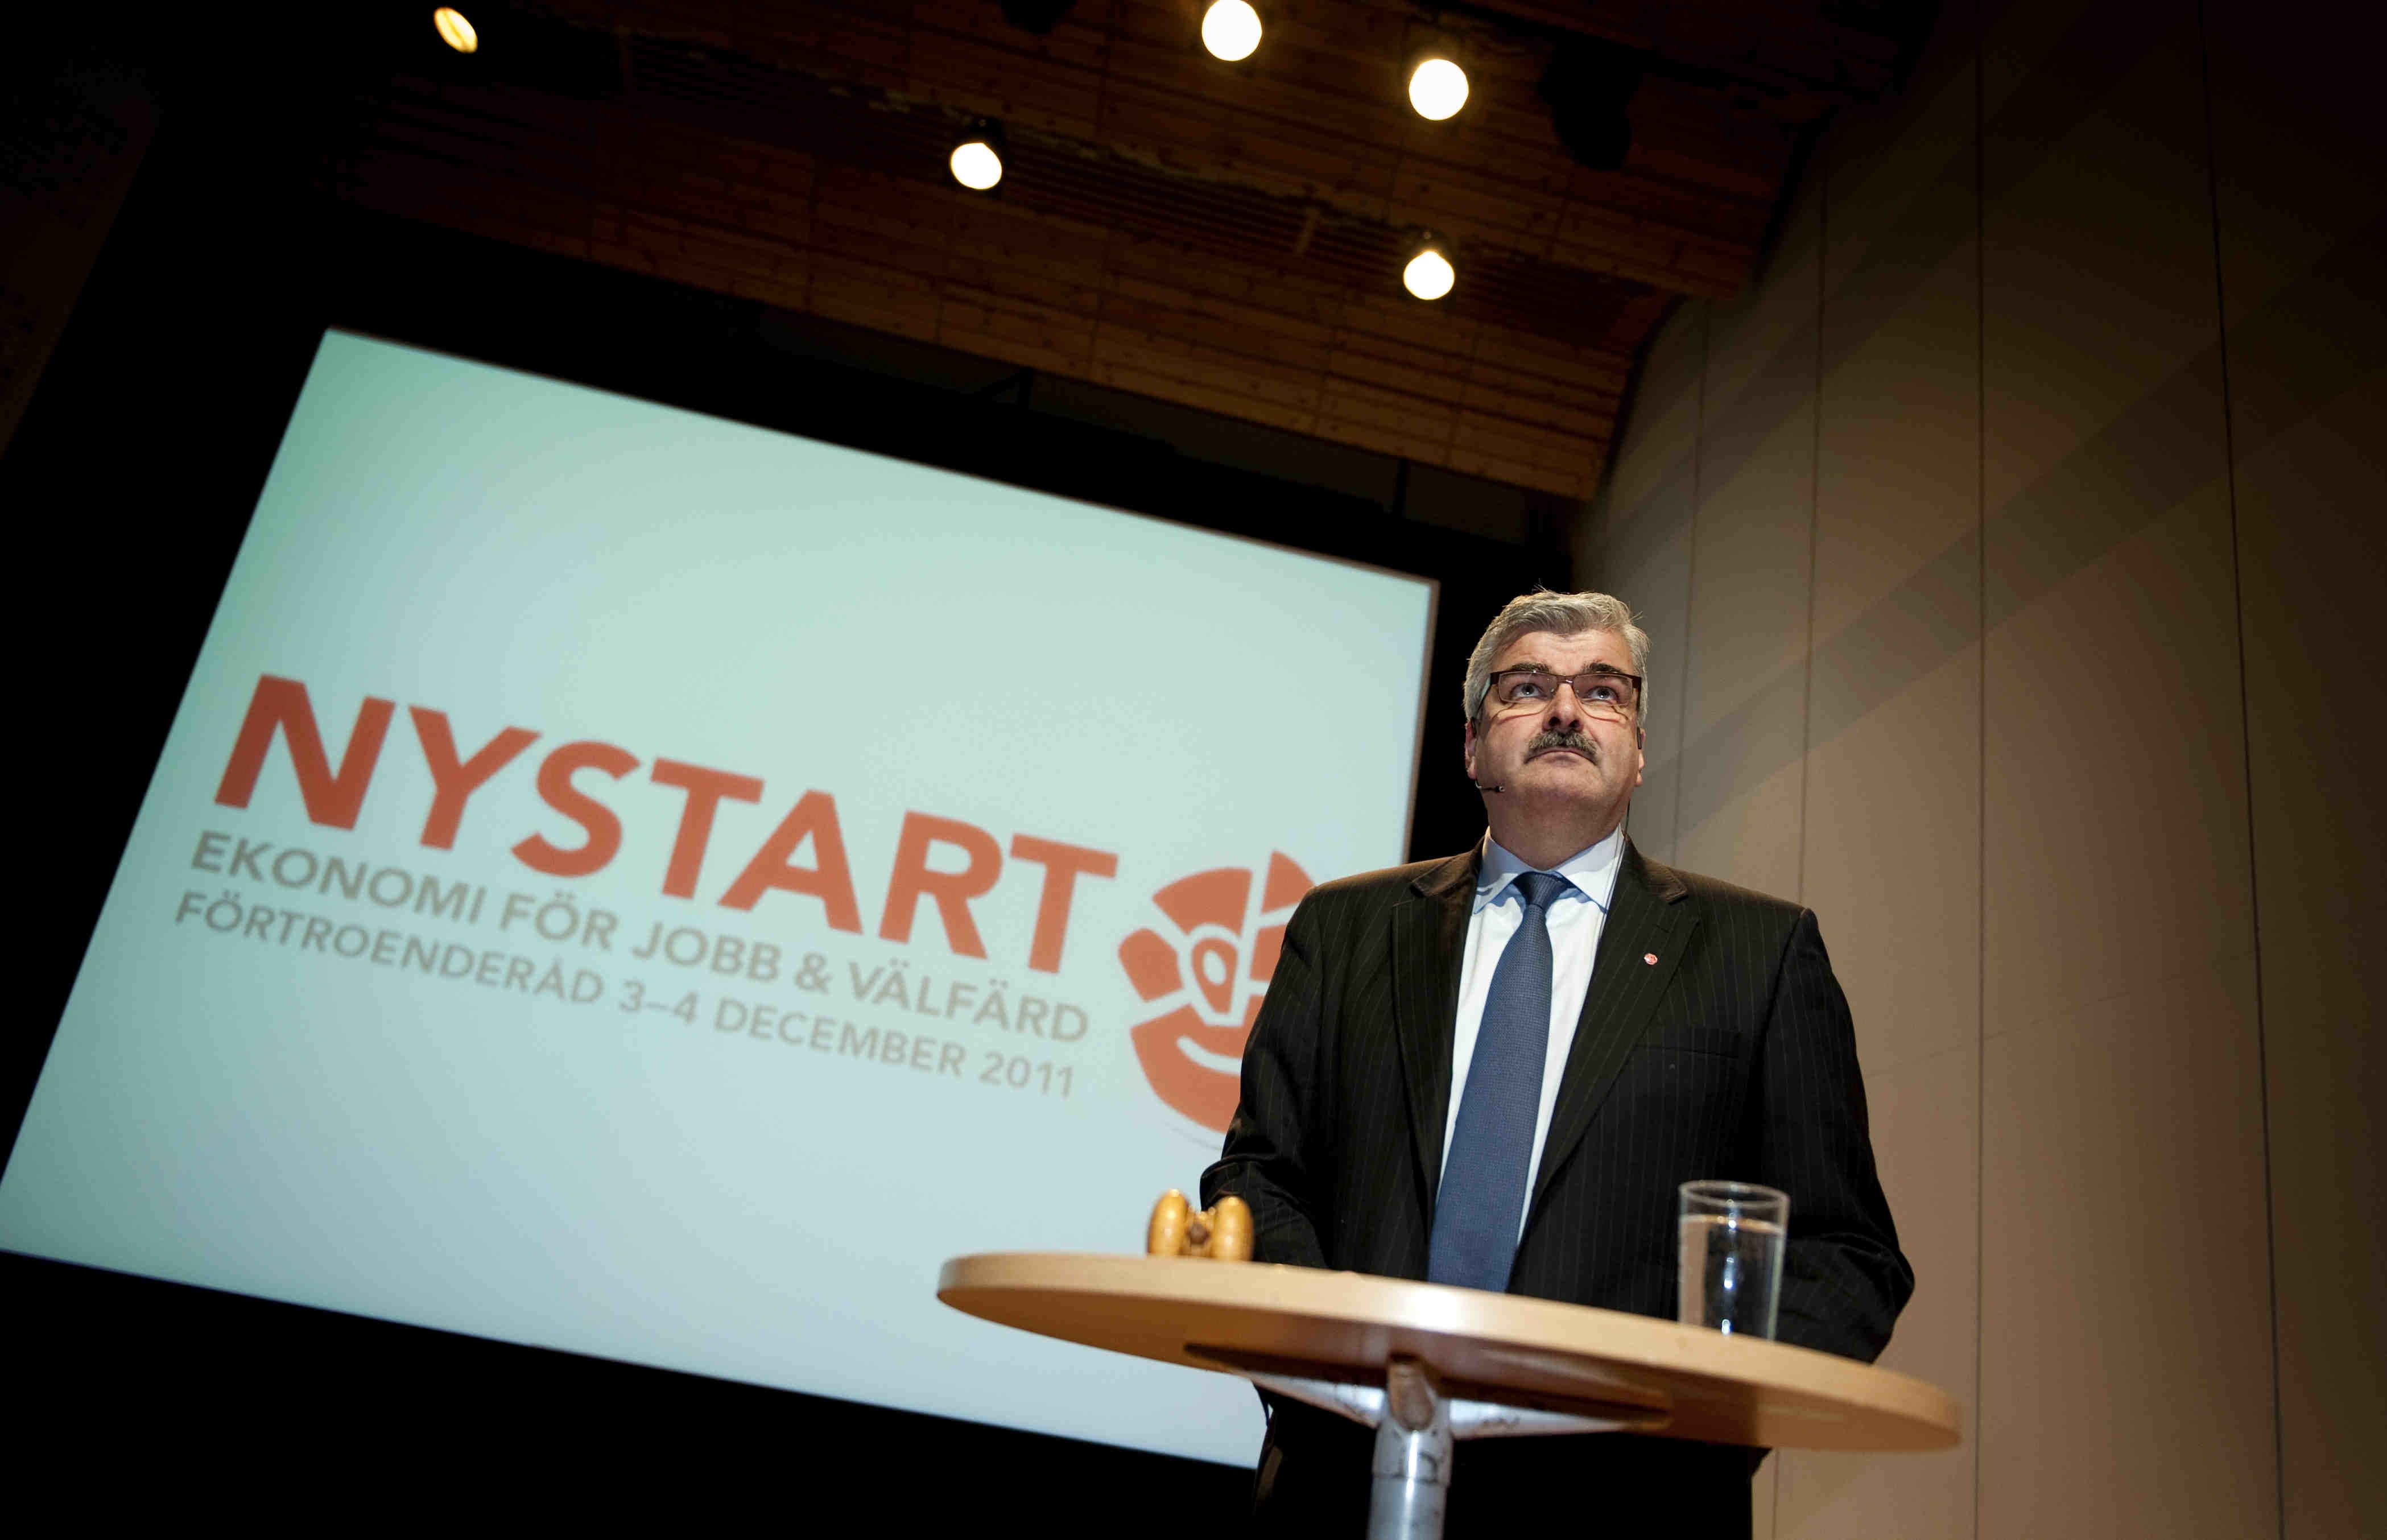 Håkan Juholt, Moderaterna, Socialdemokraterna, Oppositionen, Alliansen, Politik